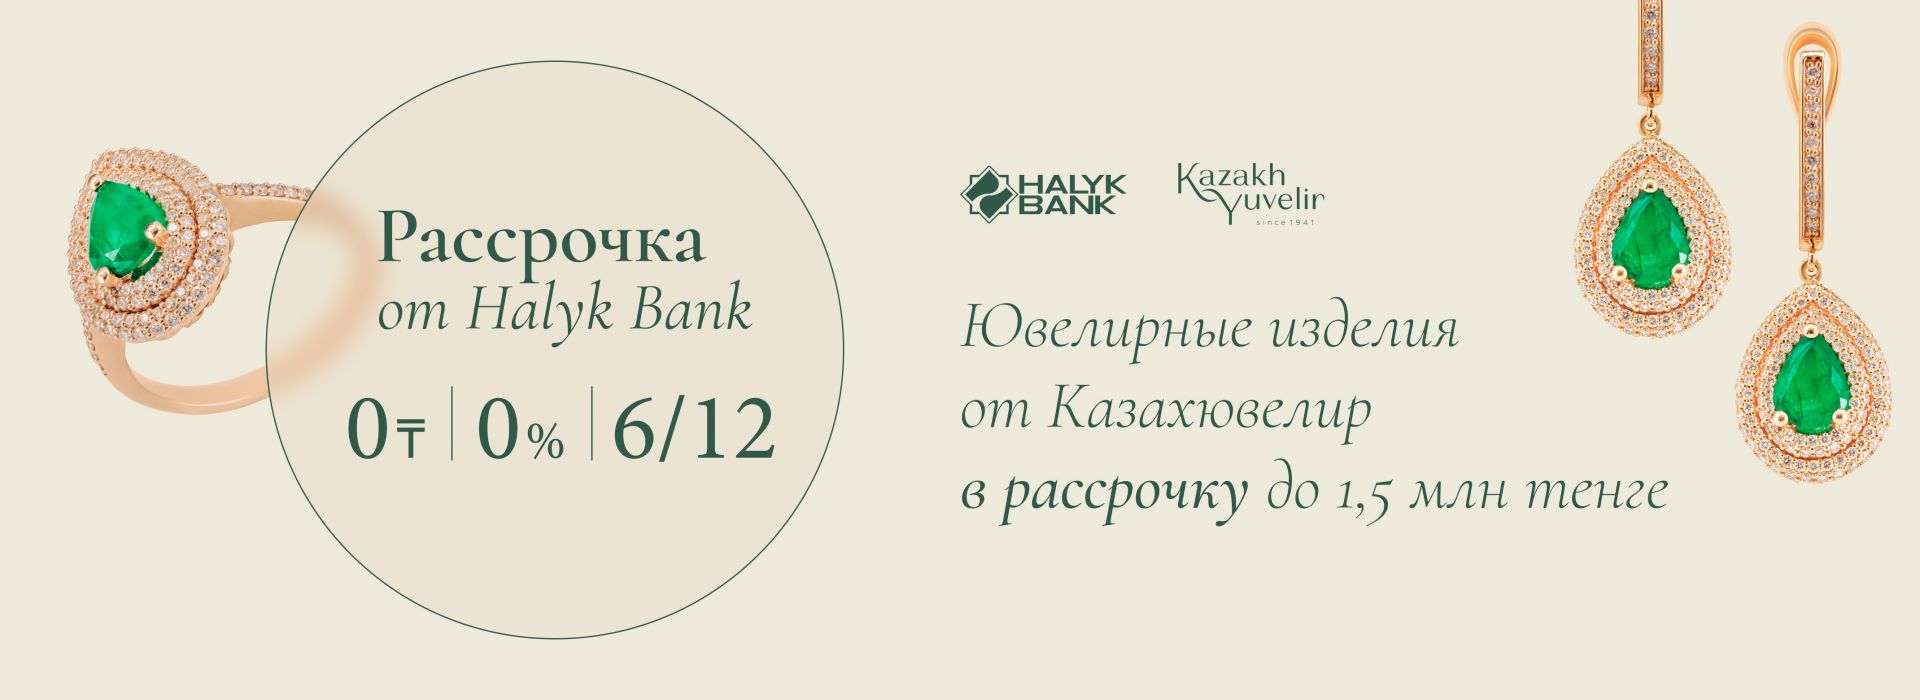 Рассрочка Halyk Bank